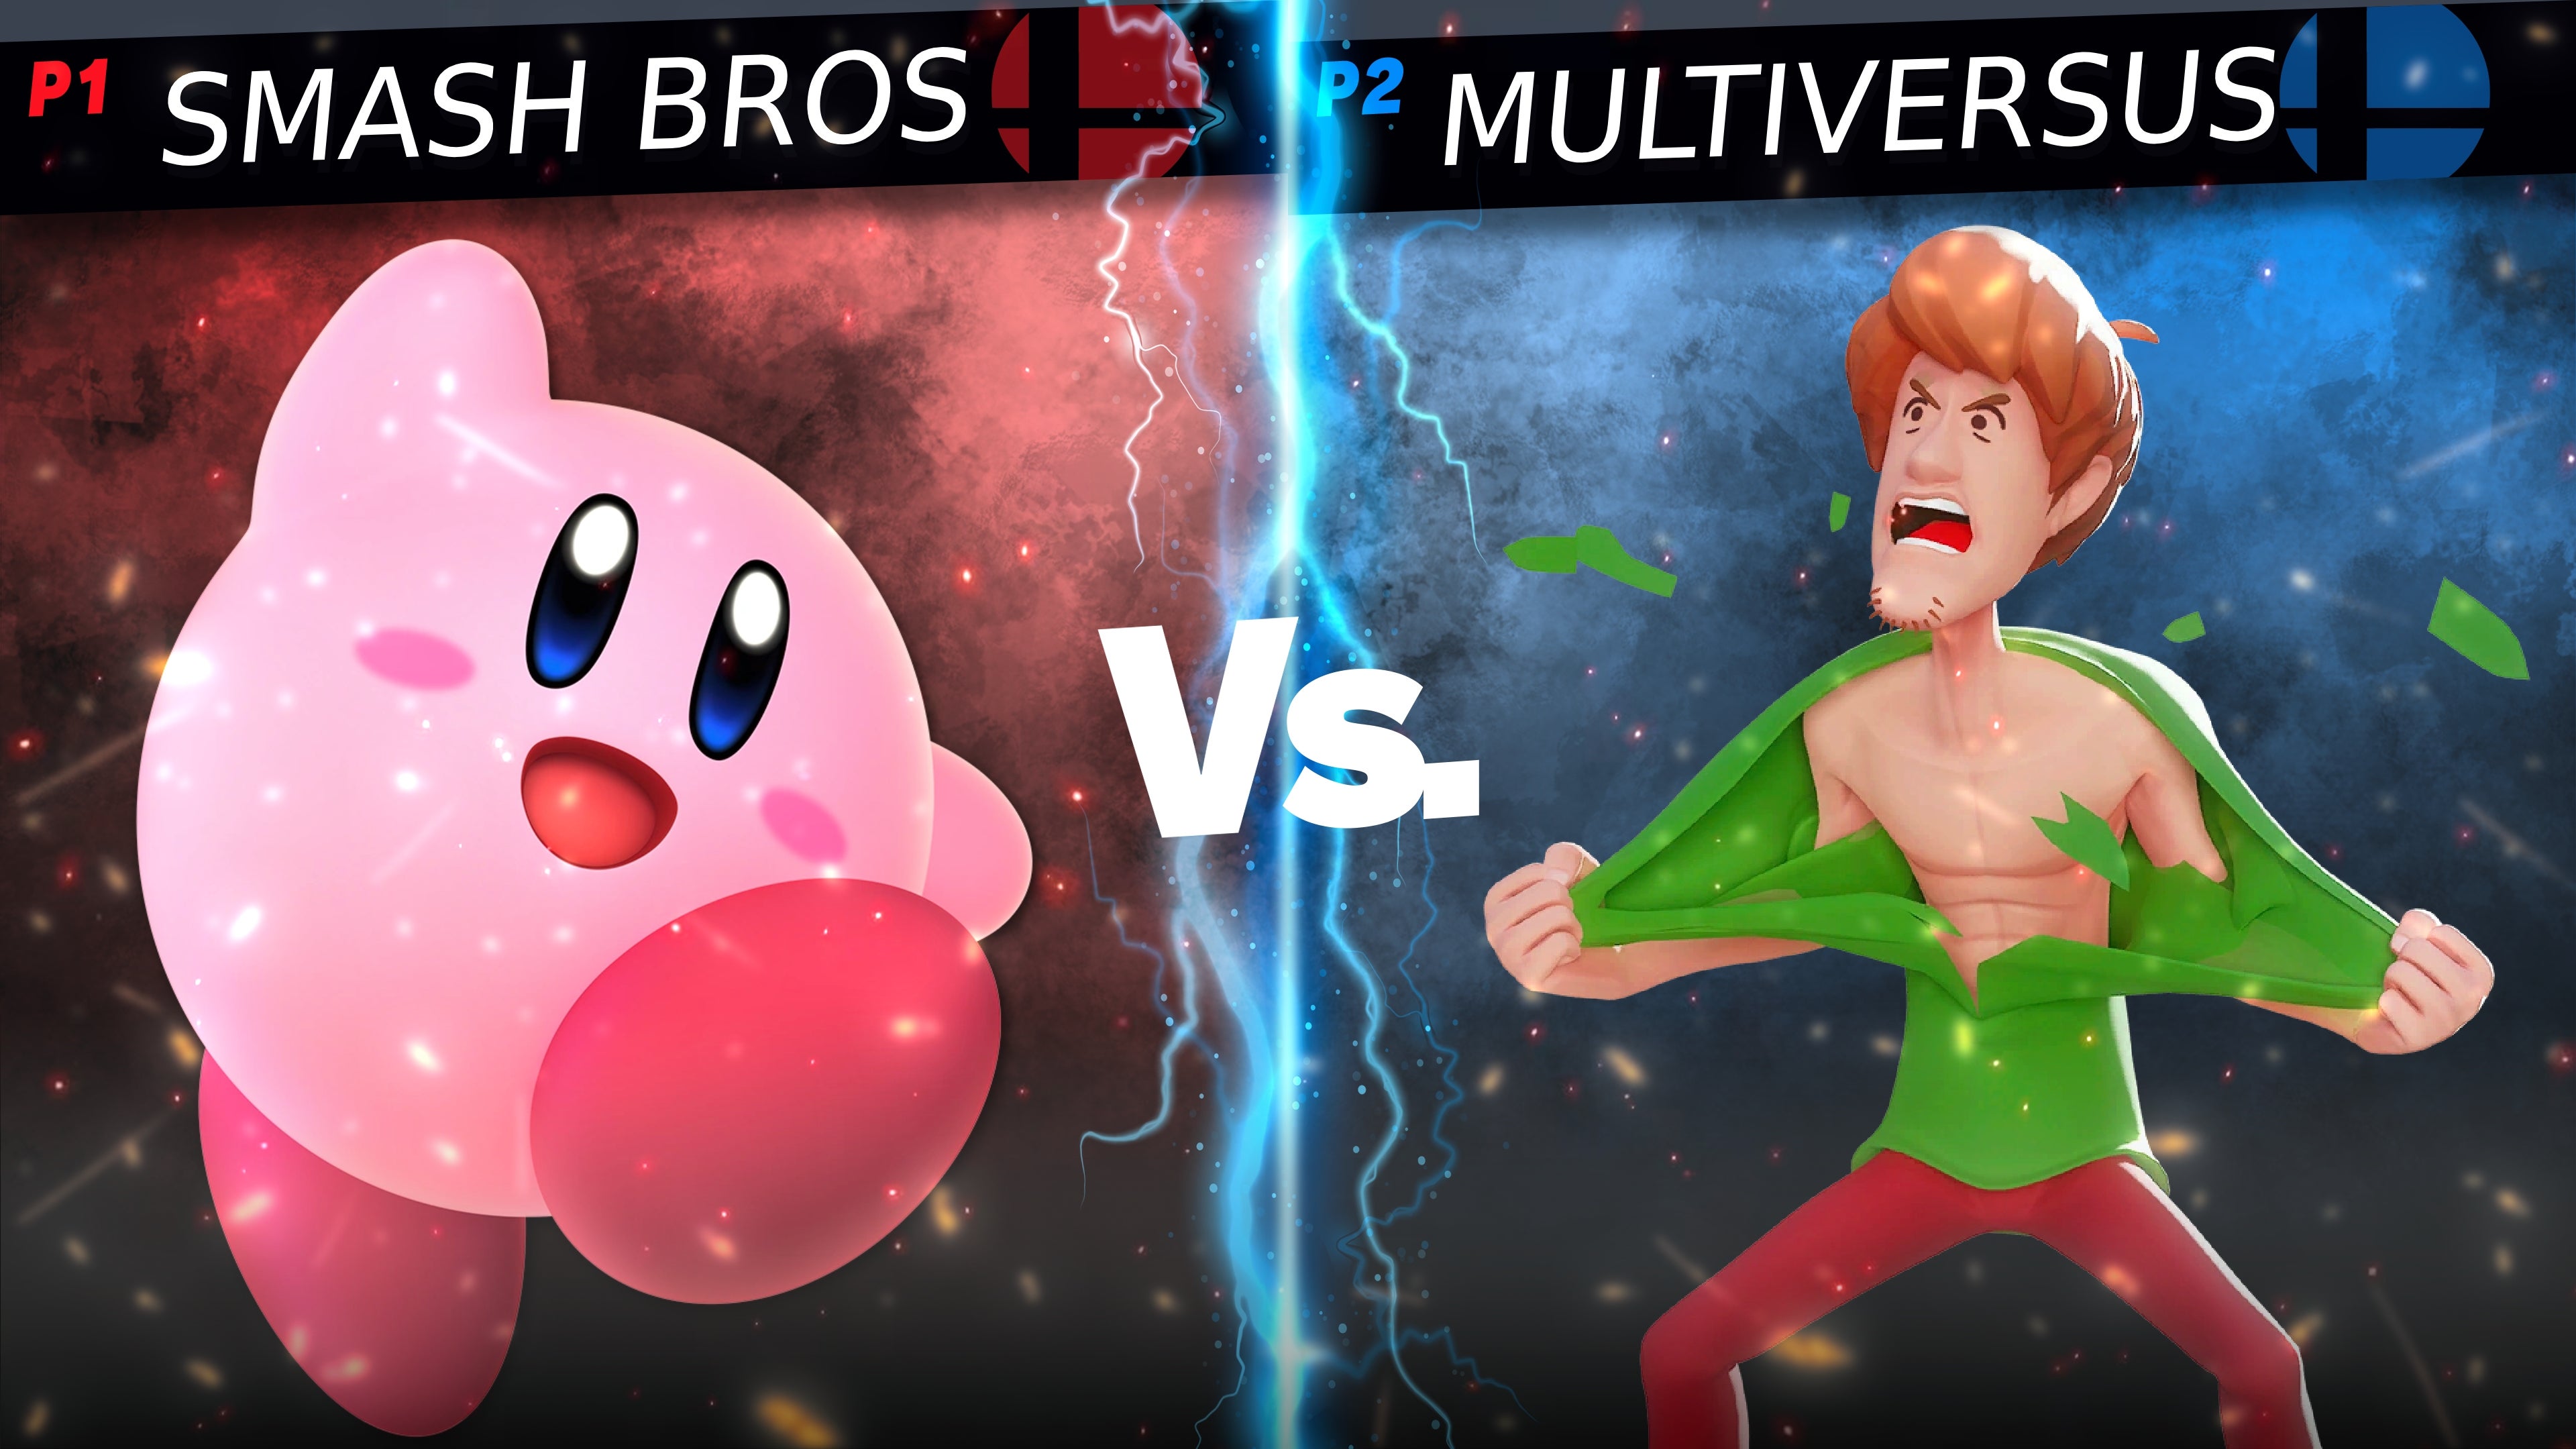 Image for MultiVersus has one huge advantage over Super Smash Bros